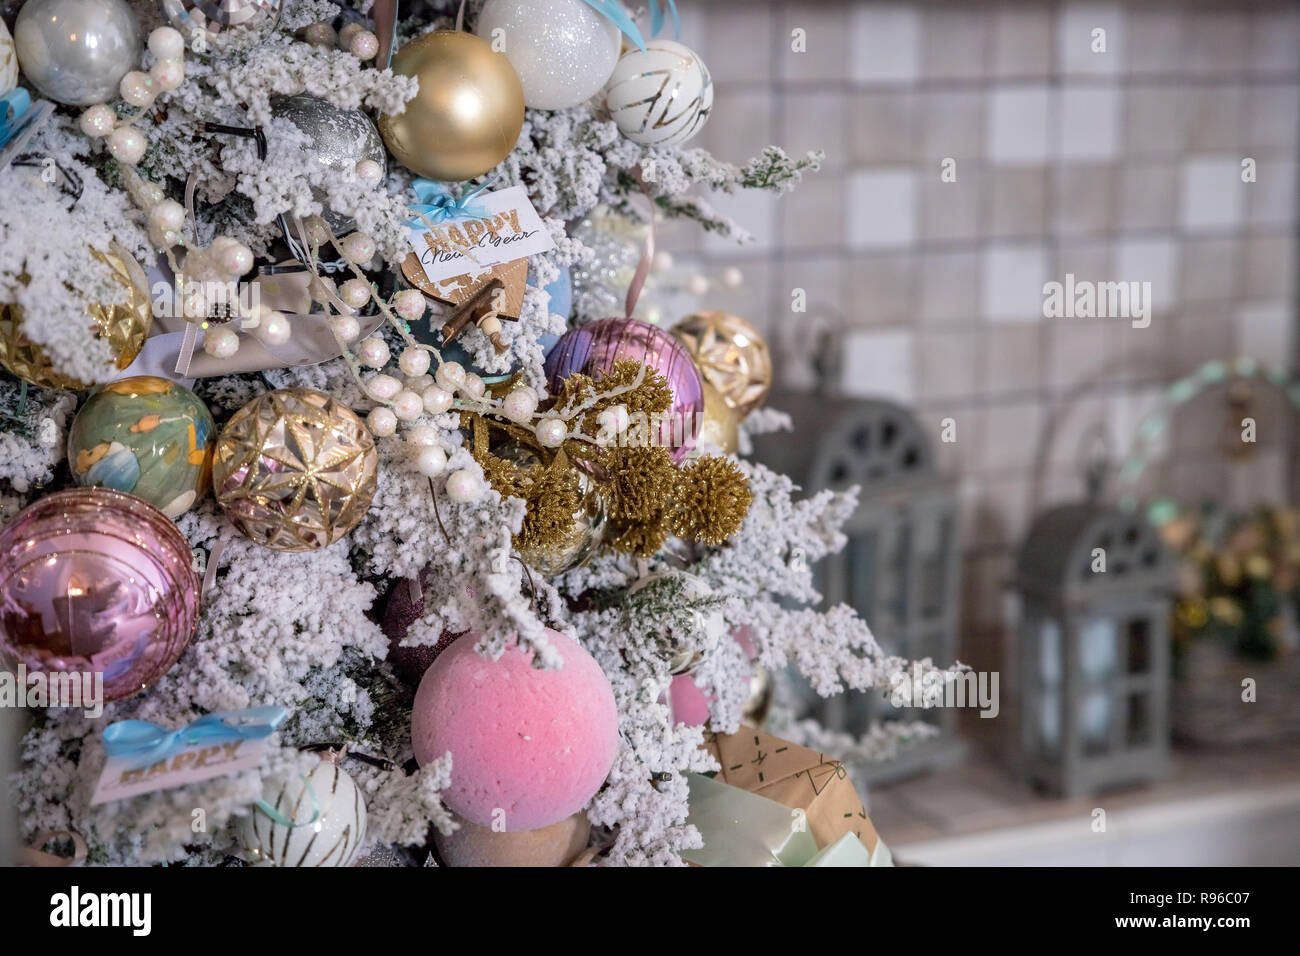 Albero Di Natale Rosa Gold.Close Up Di Decorazione Per Albero Di Natale Con Oro Argento Rosa E Bianco Tinsel Glitter